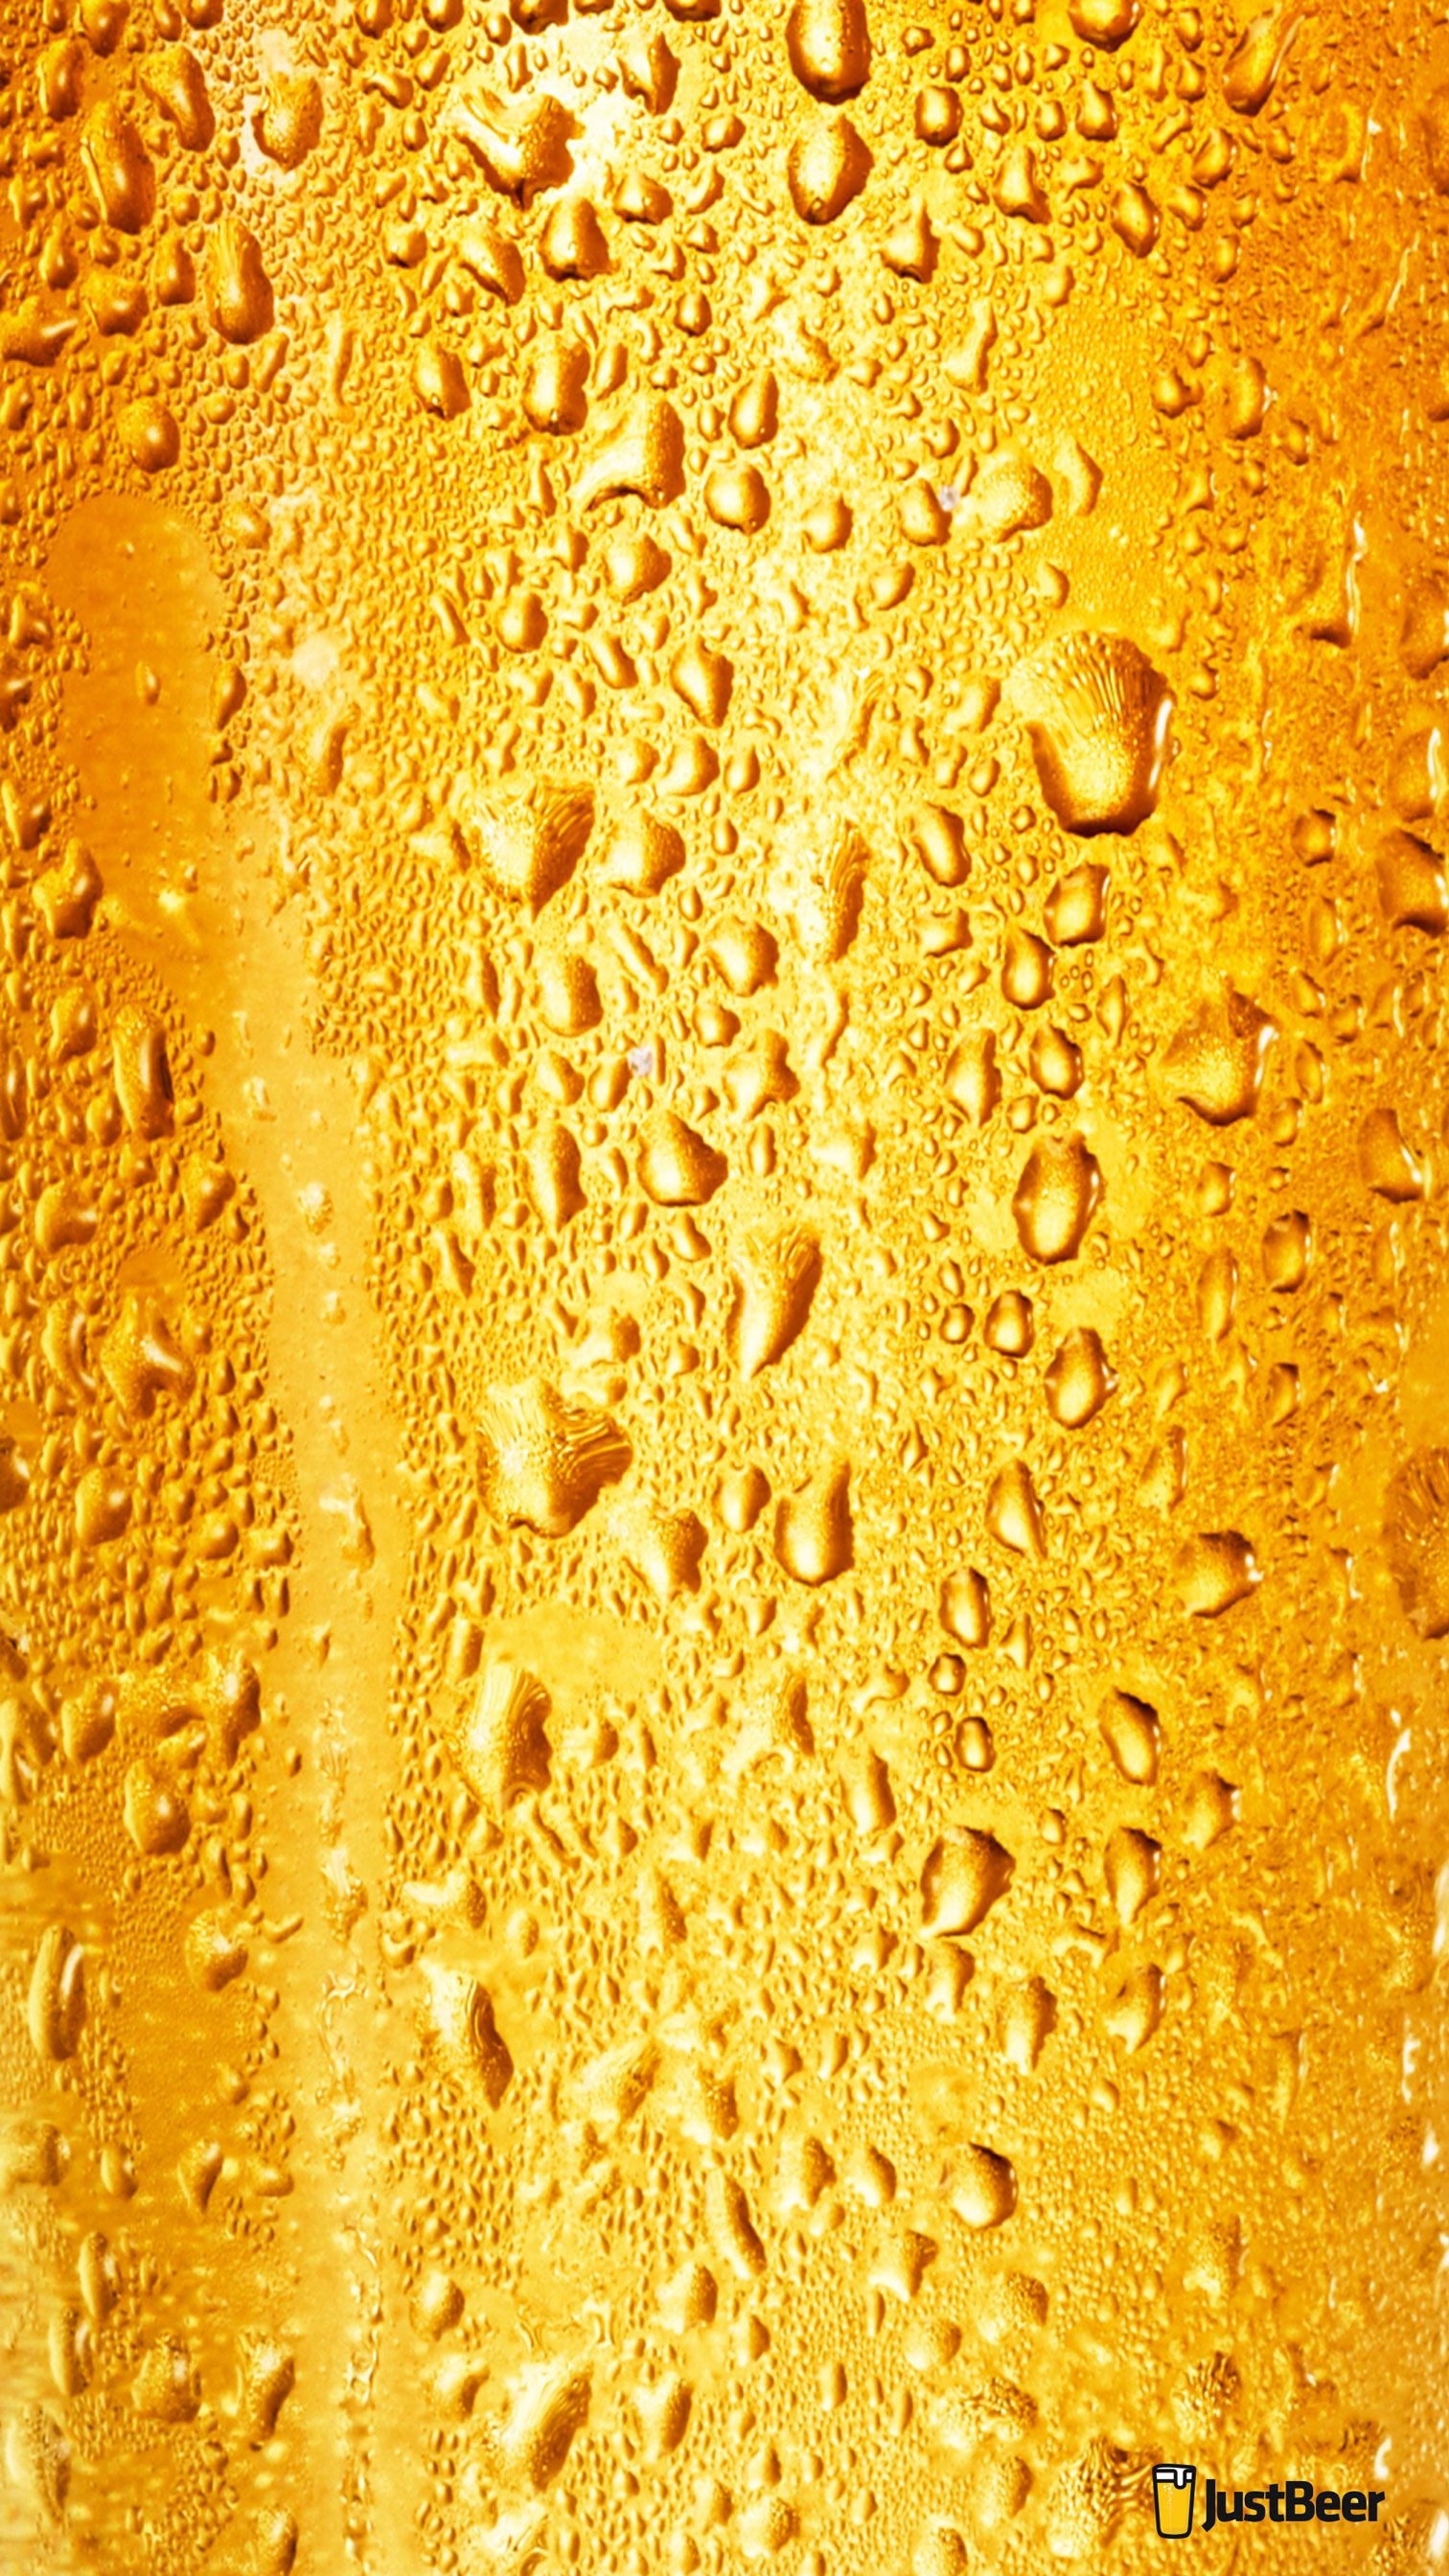 Astronaut Drinking Beer Iphone Wallpapers